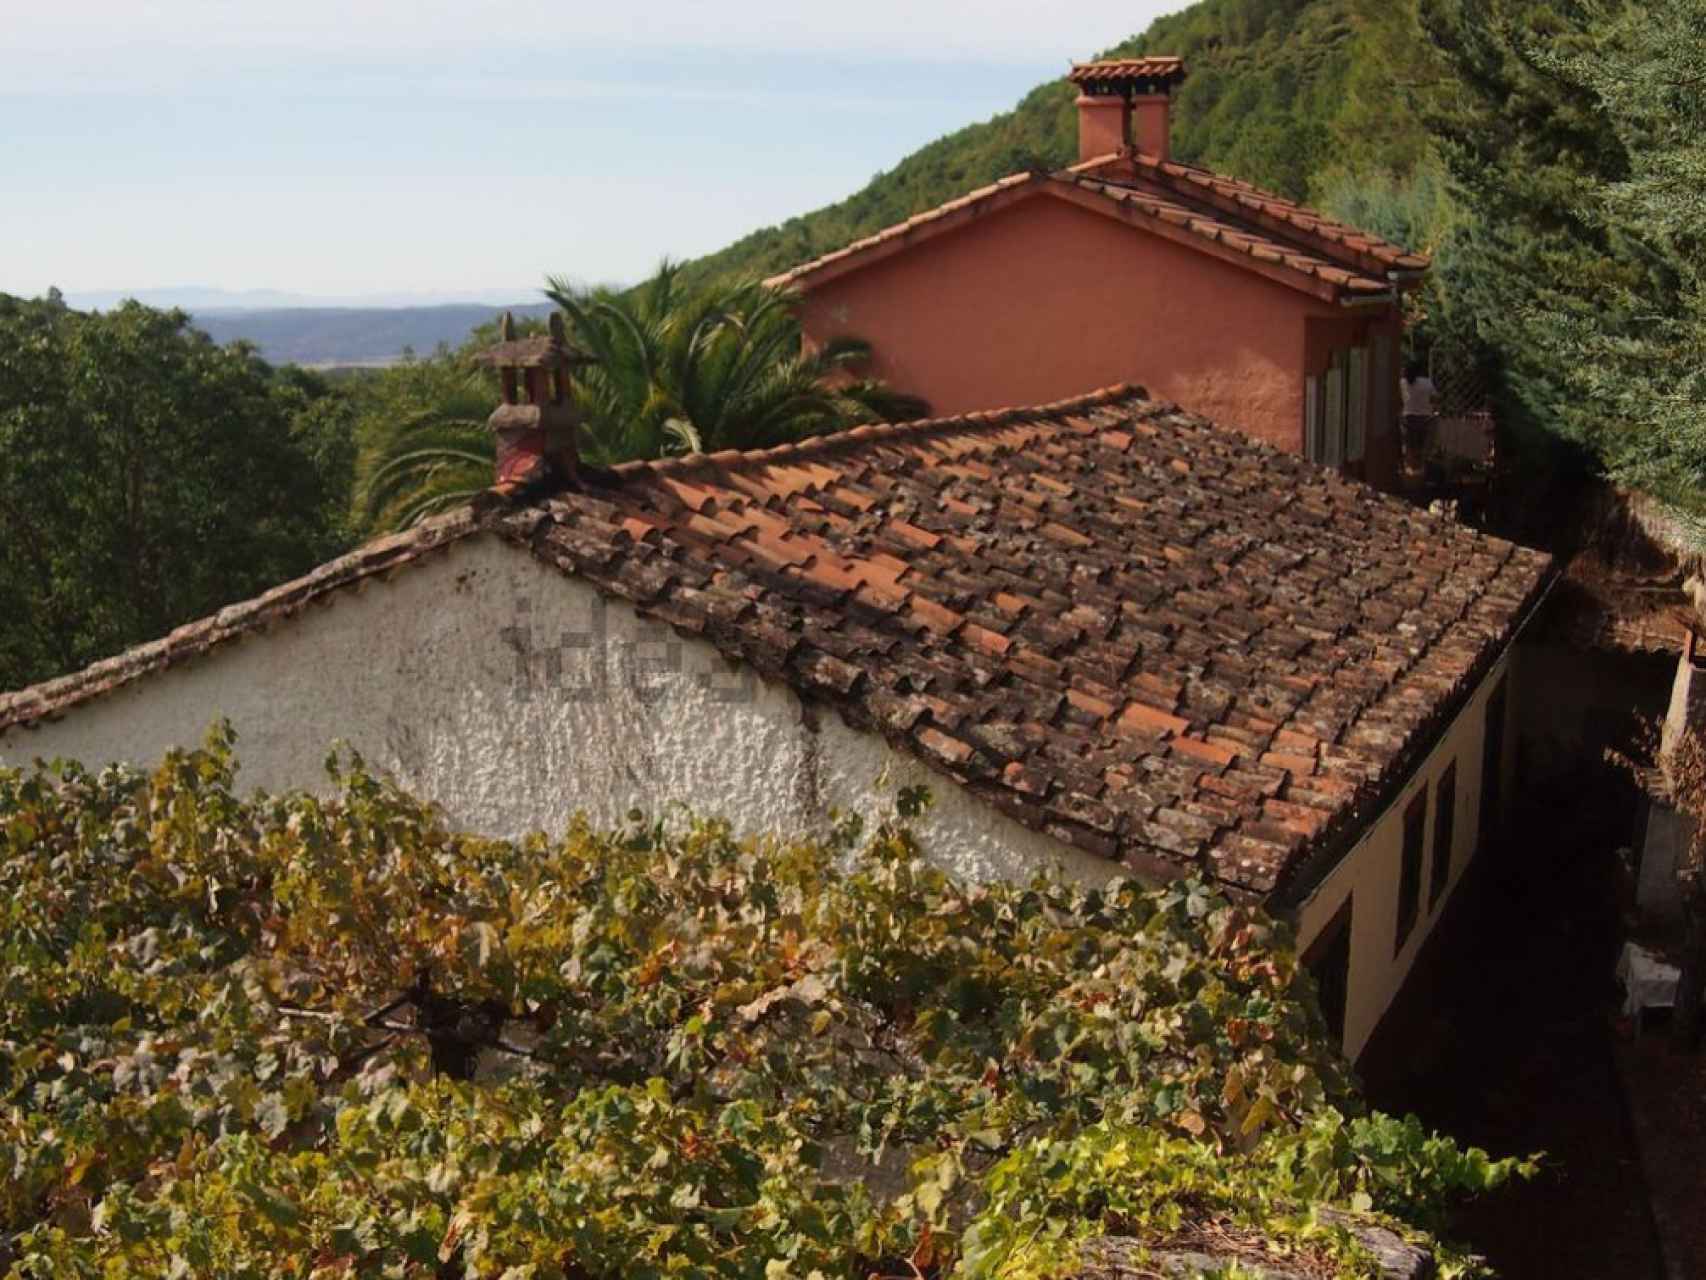 Una de las casas con piscina en la localidad abulense de Pedro Bernardo.